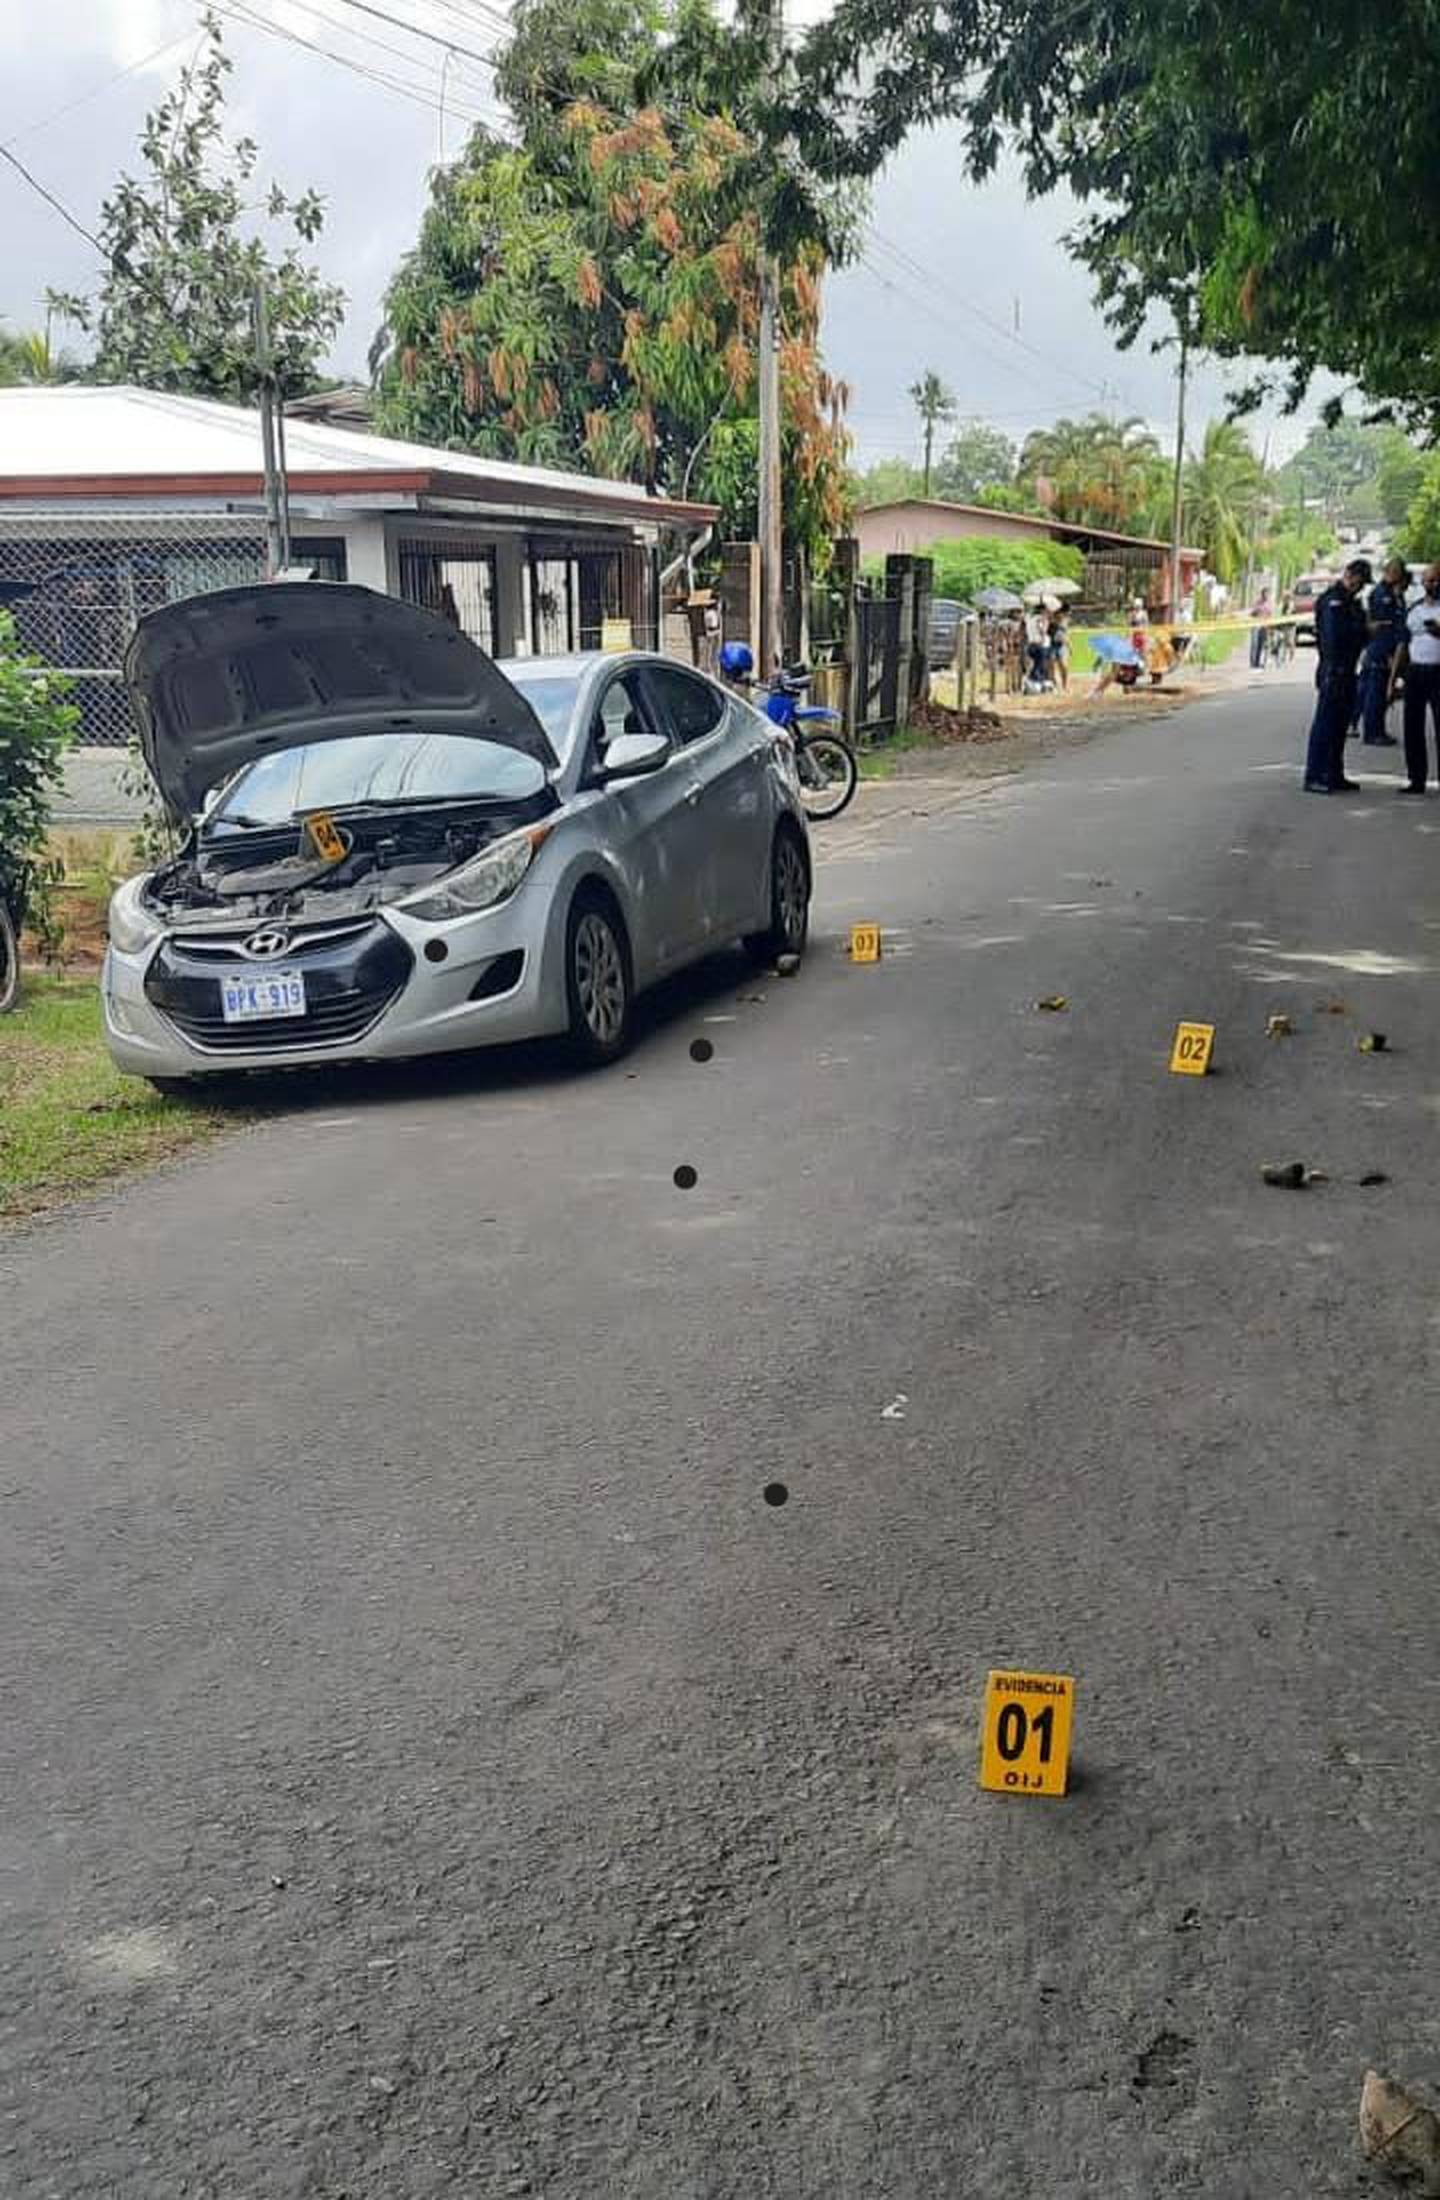 El Hyundai gris quedó a un lado de la carretera en La Guaria de Cariari, donde motorizados dispararon al menos 15 veces contra el vehículo y varios proyectiles alcanzaron al chofer. Foto: Reiner Montero.